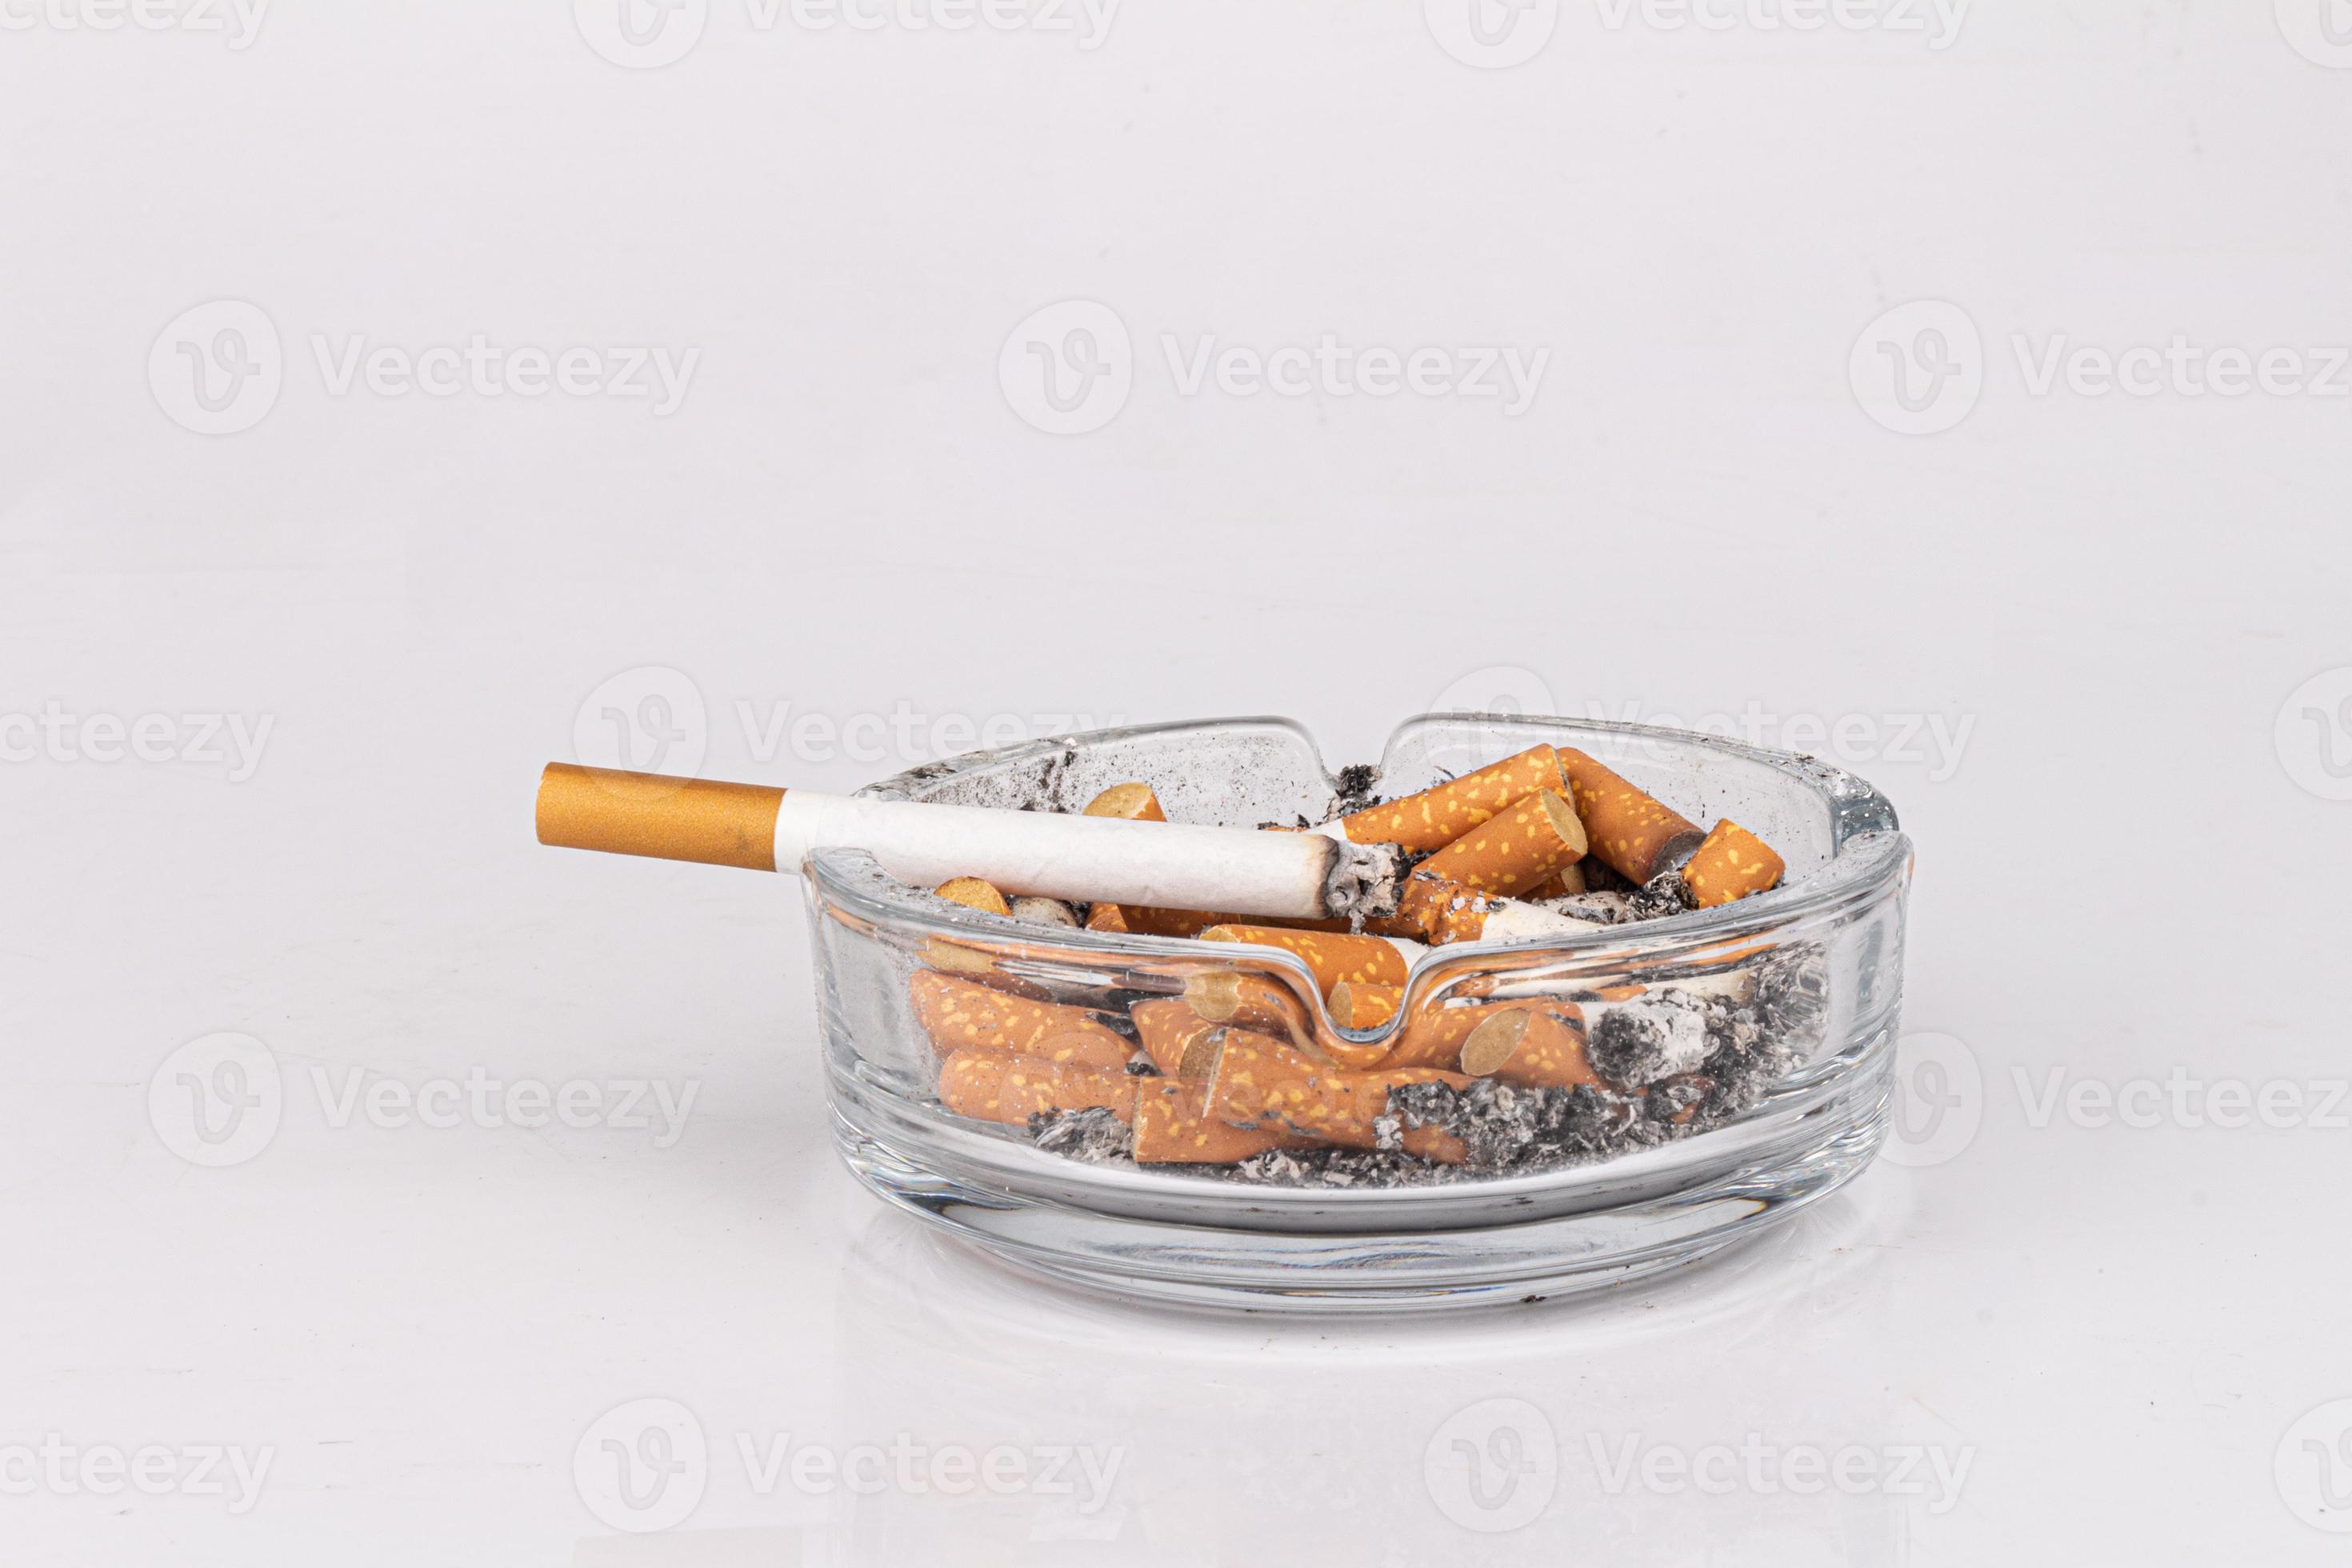 https://static.vecteezy.com/ti/fotos-kostenlos/p2/19894779-zigarette-aschenbecher-weiss-hintergrund-asche-rauch-hintern-foto.jpg